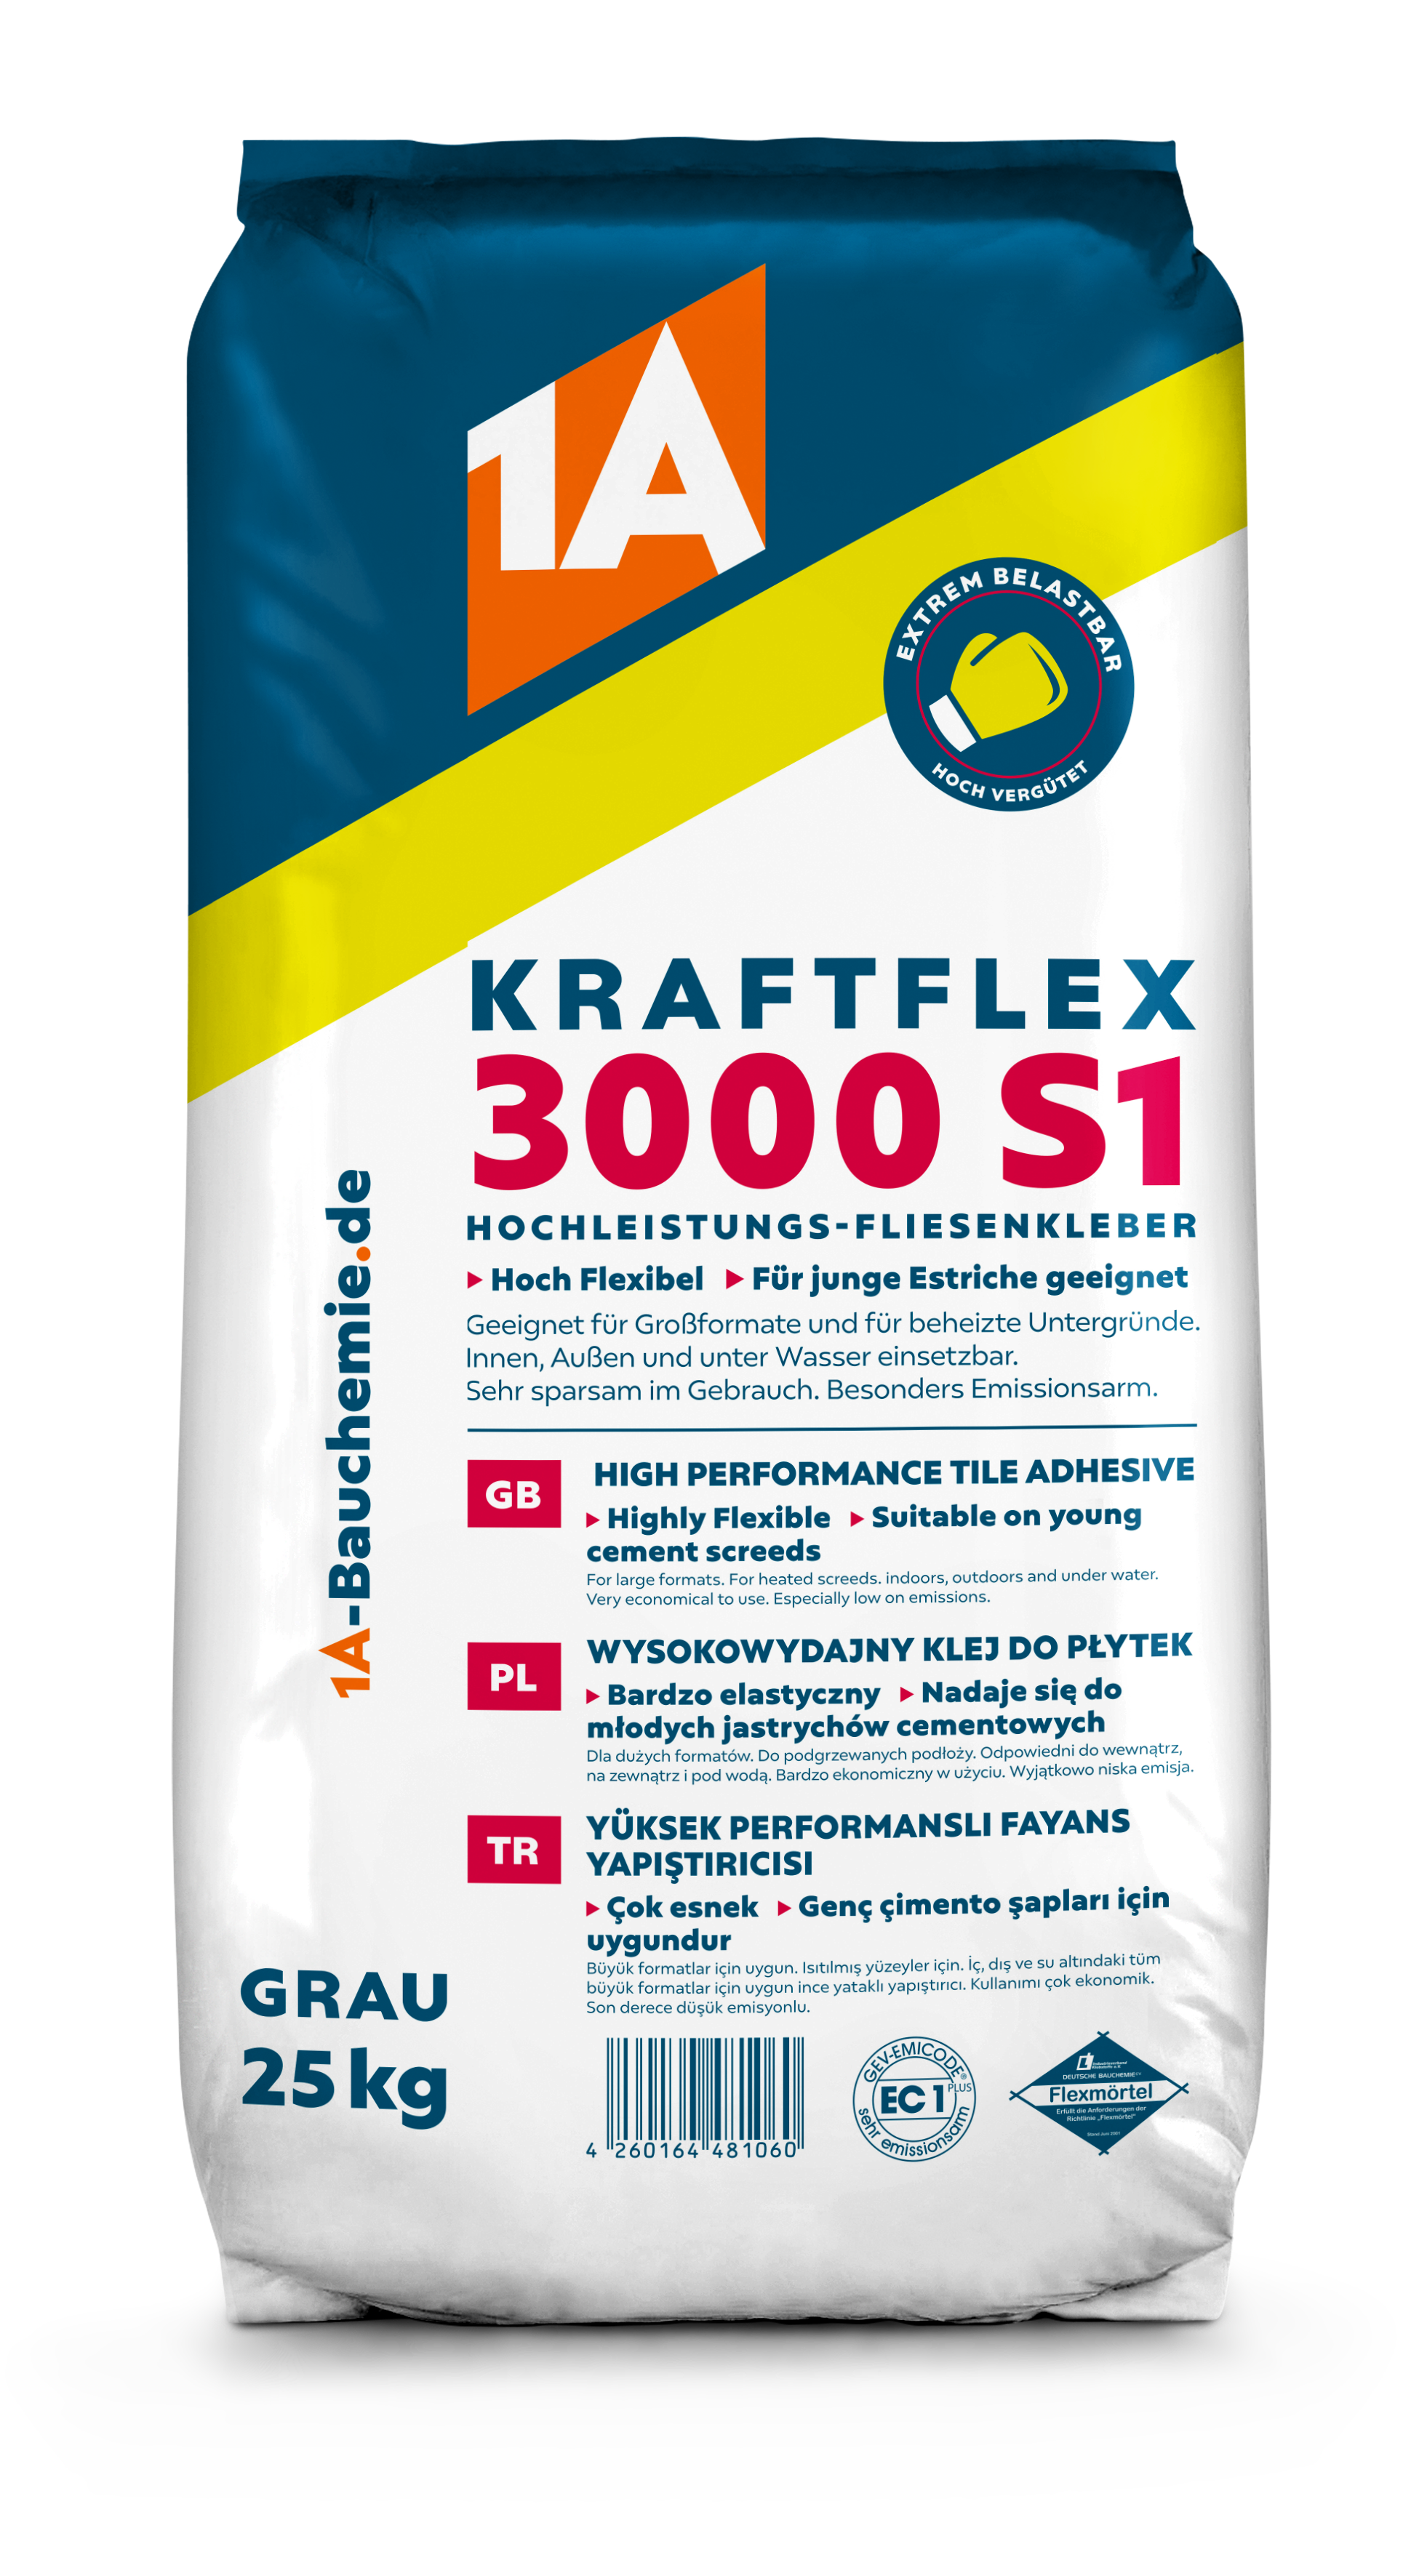 1A KRAFTFLEX 3000 S1